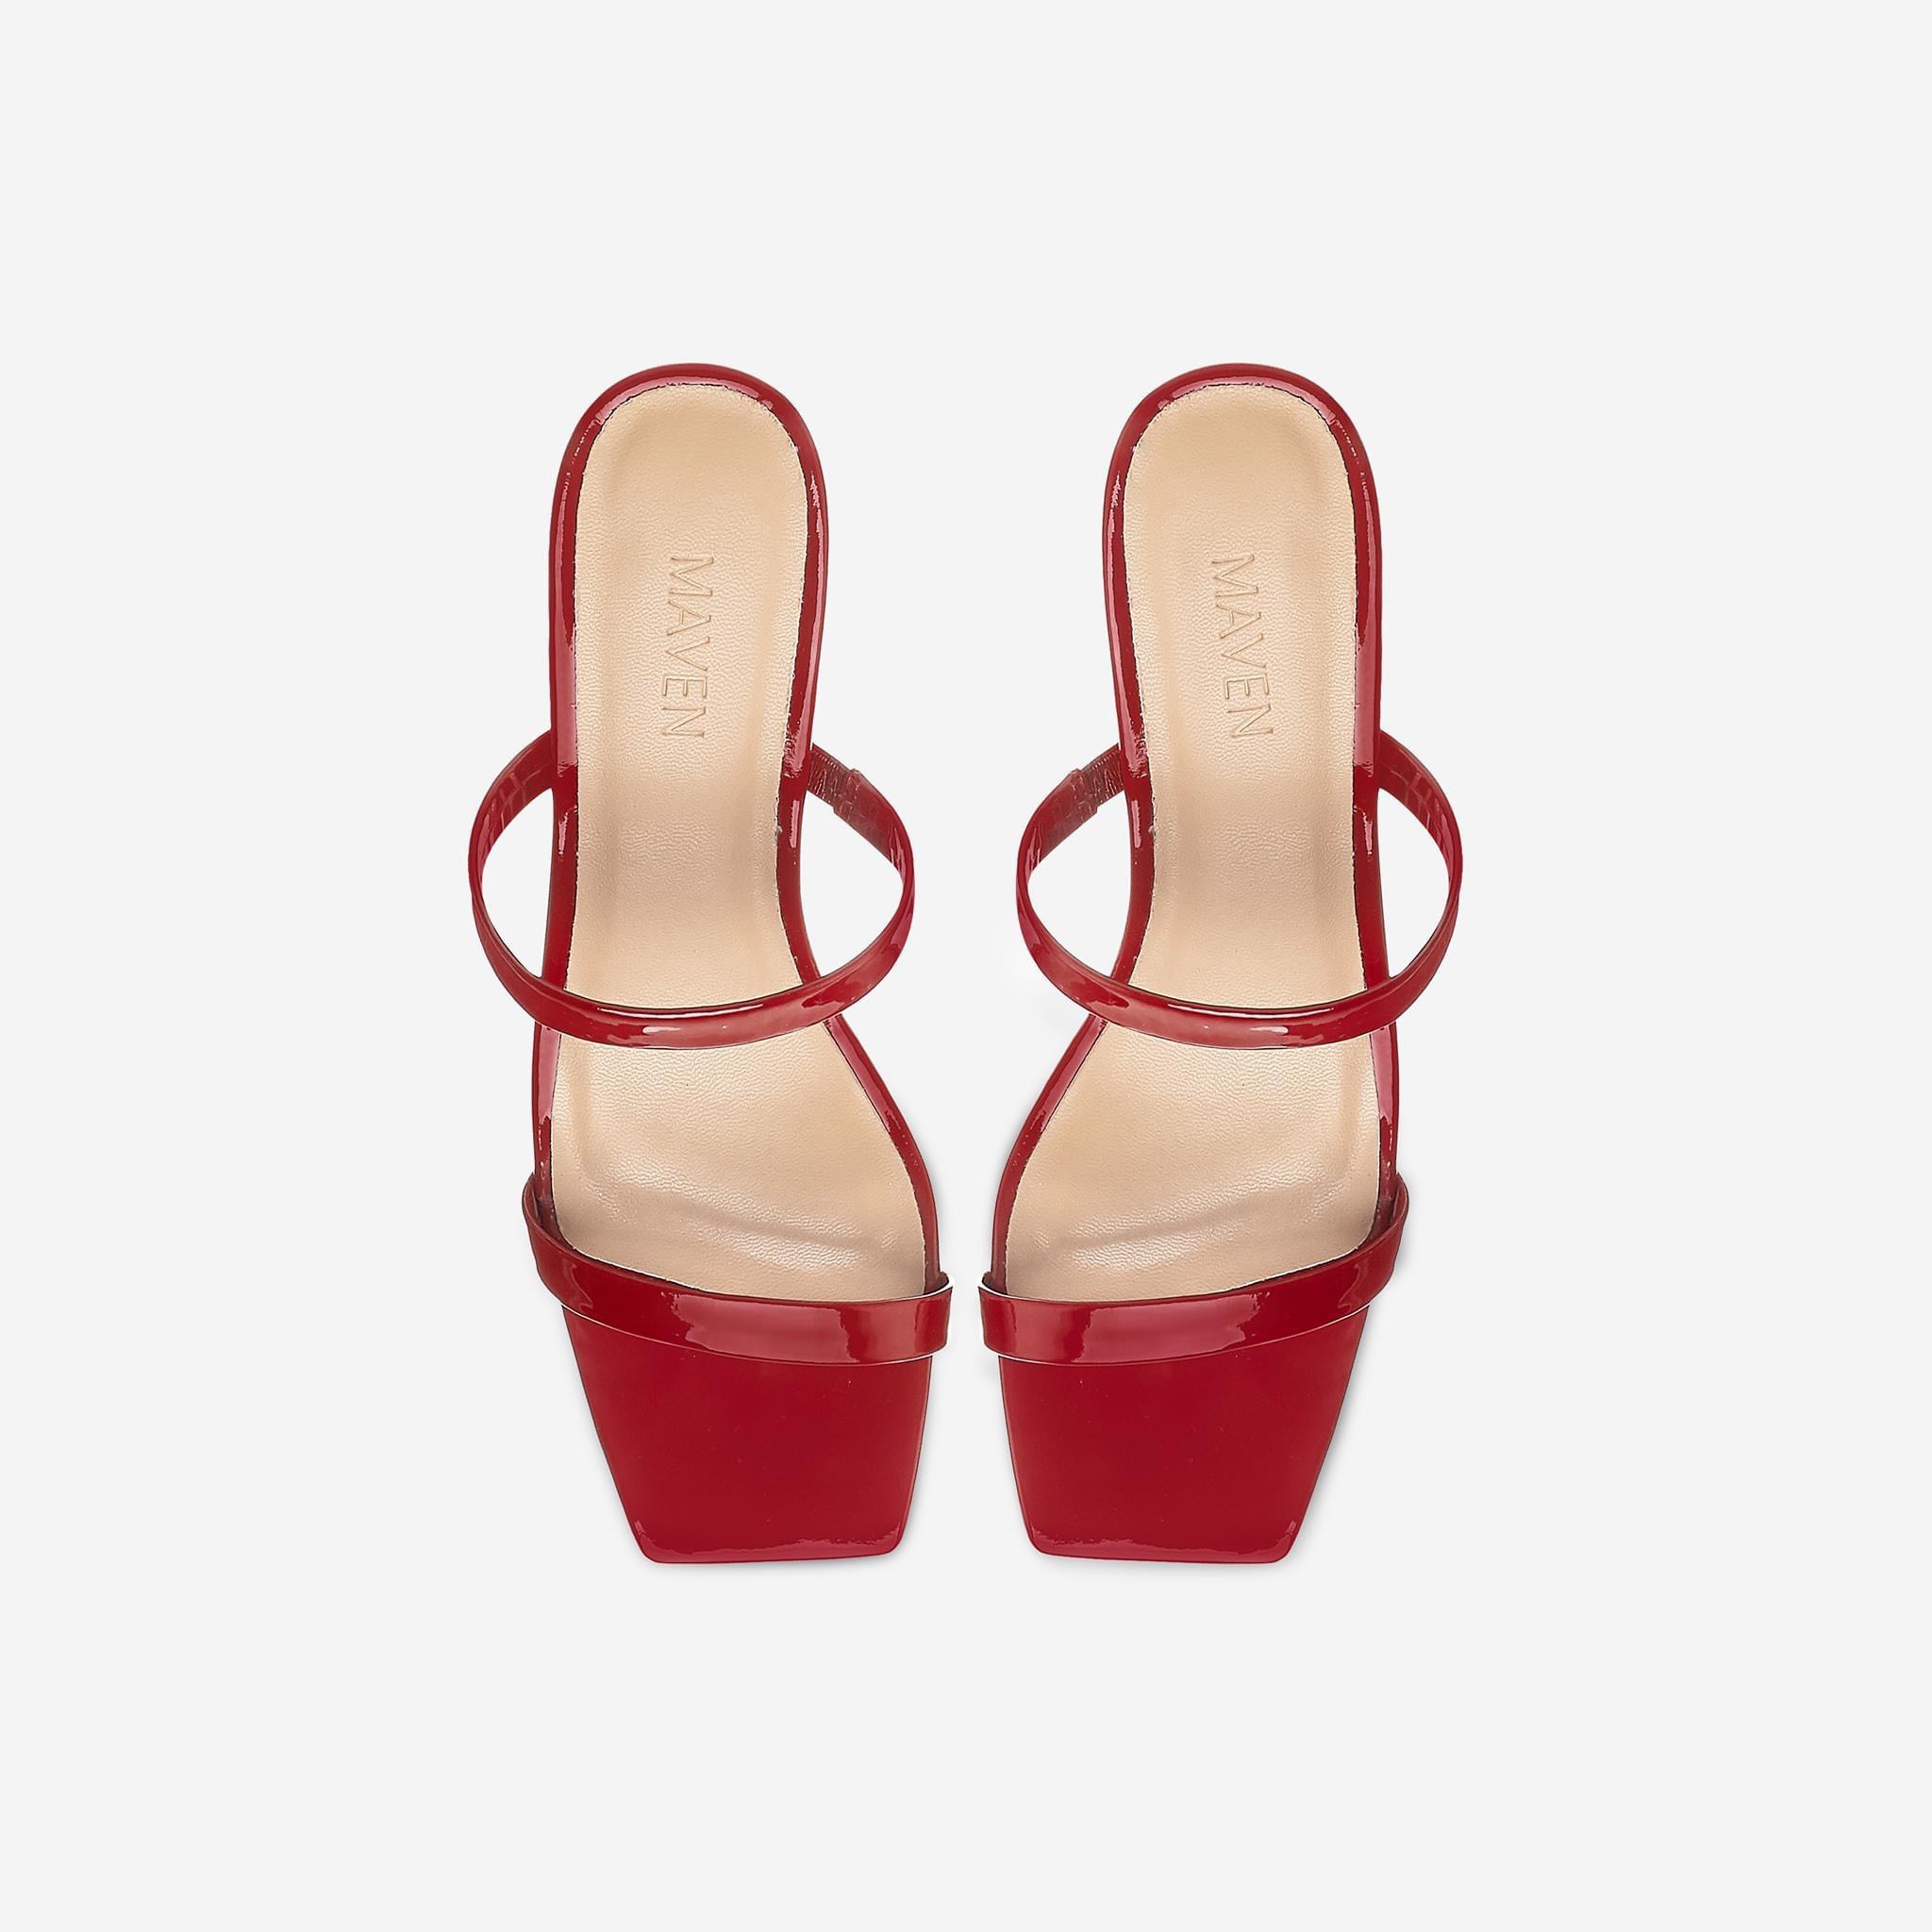 MAVEN - Giày sandal đỏ 5cm Sandy Red Heels